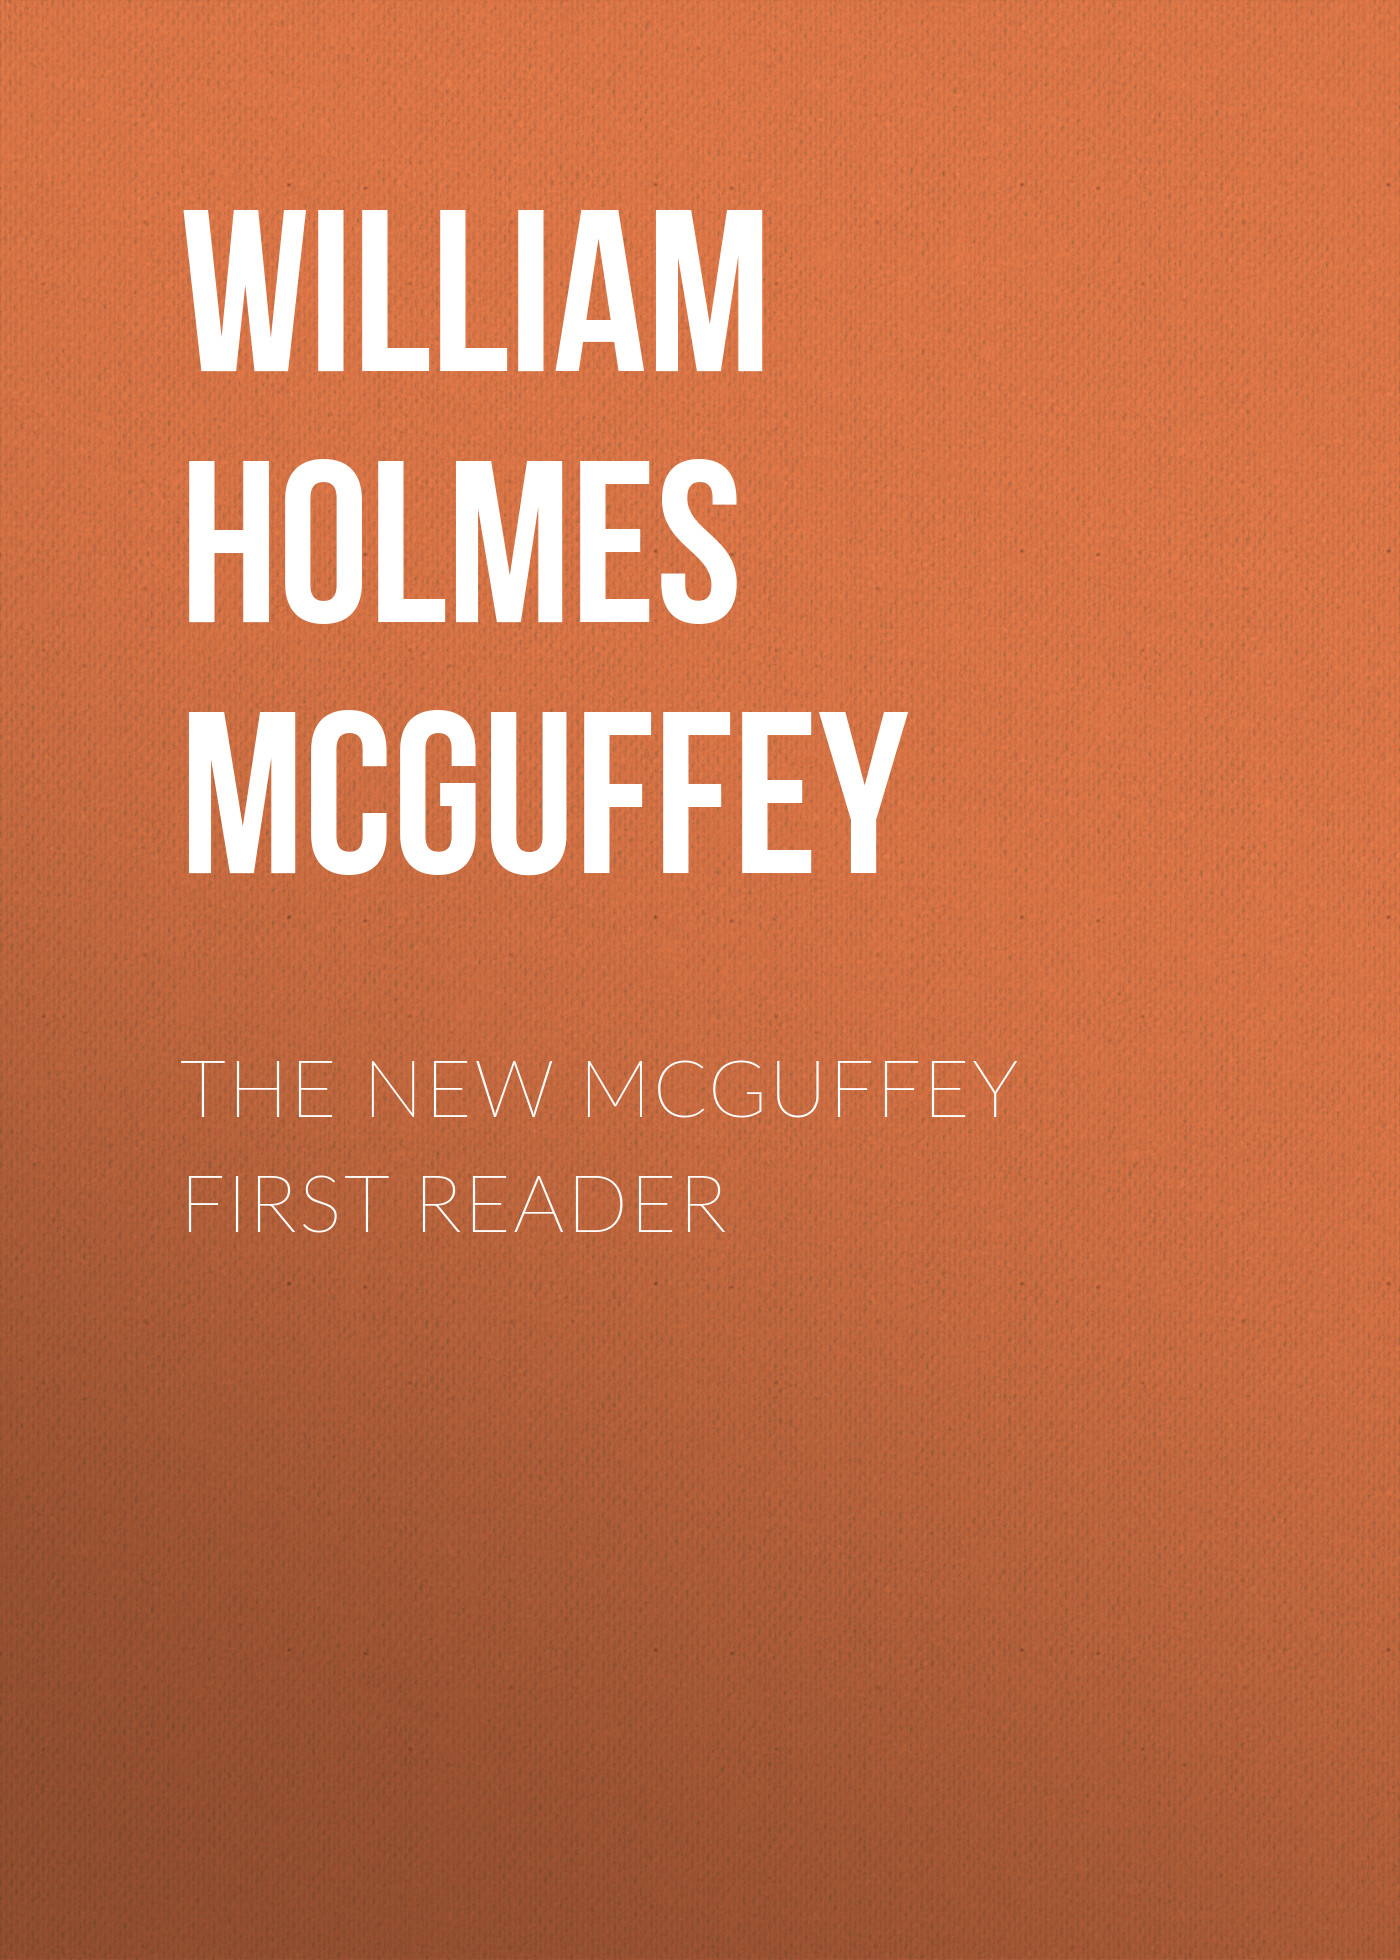 Книга The New McGuffey First Reader из серии , созданная William Holmes McGuffey, может относится к жанру Зарубежная классика, Литература 19 века, Зарубежная старинная литература. Стоимость электронной книги The New McGuffey First Reader с идентификатором 35008145 составляет 0 руб.